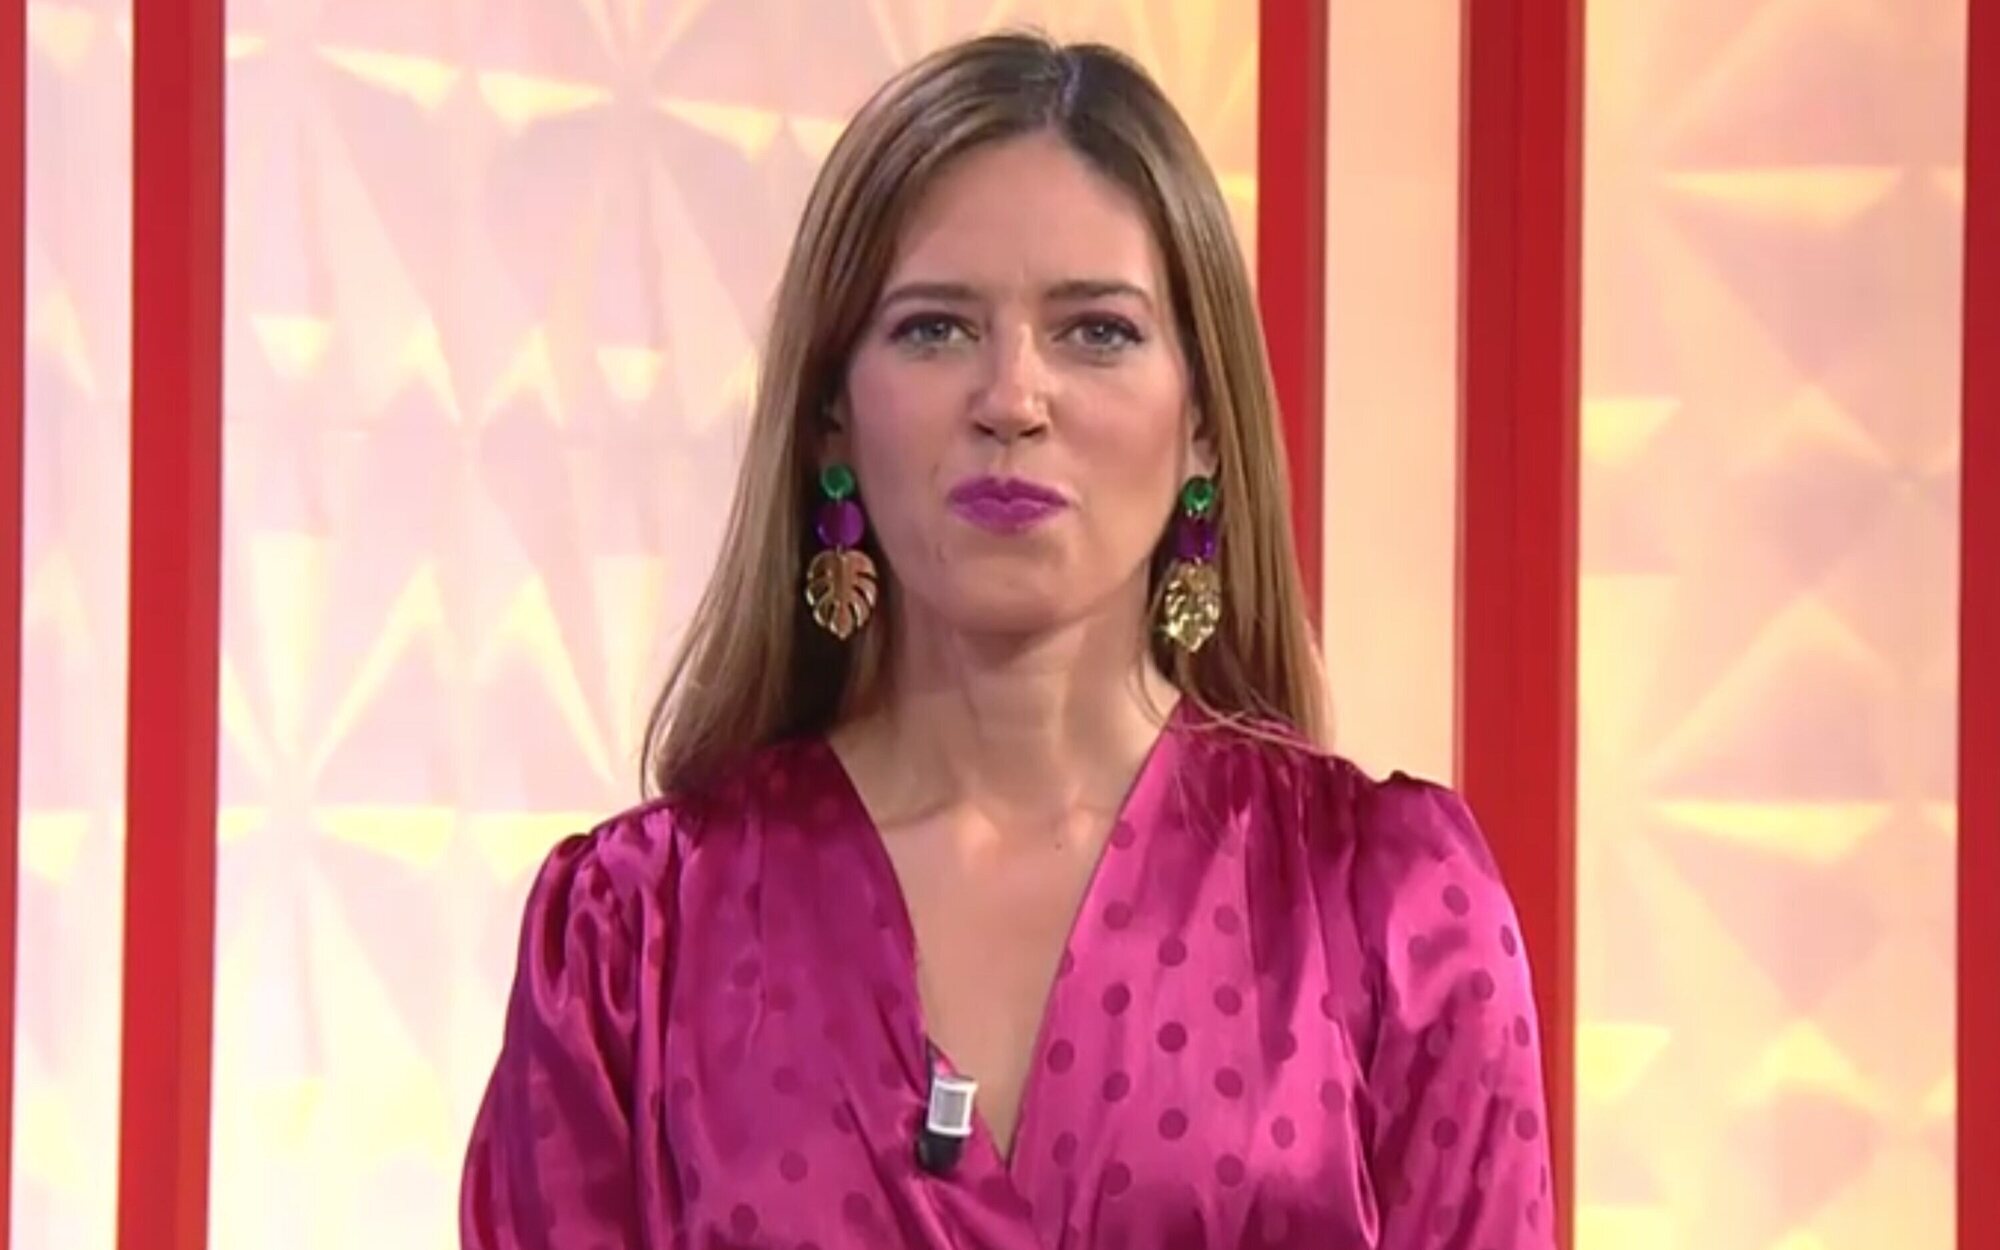 La contundente reacción de Nuria Marín ante el ataque de Carmen Lomana relacionado con la "prostitución"